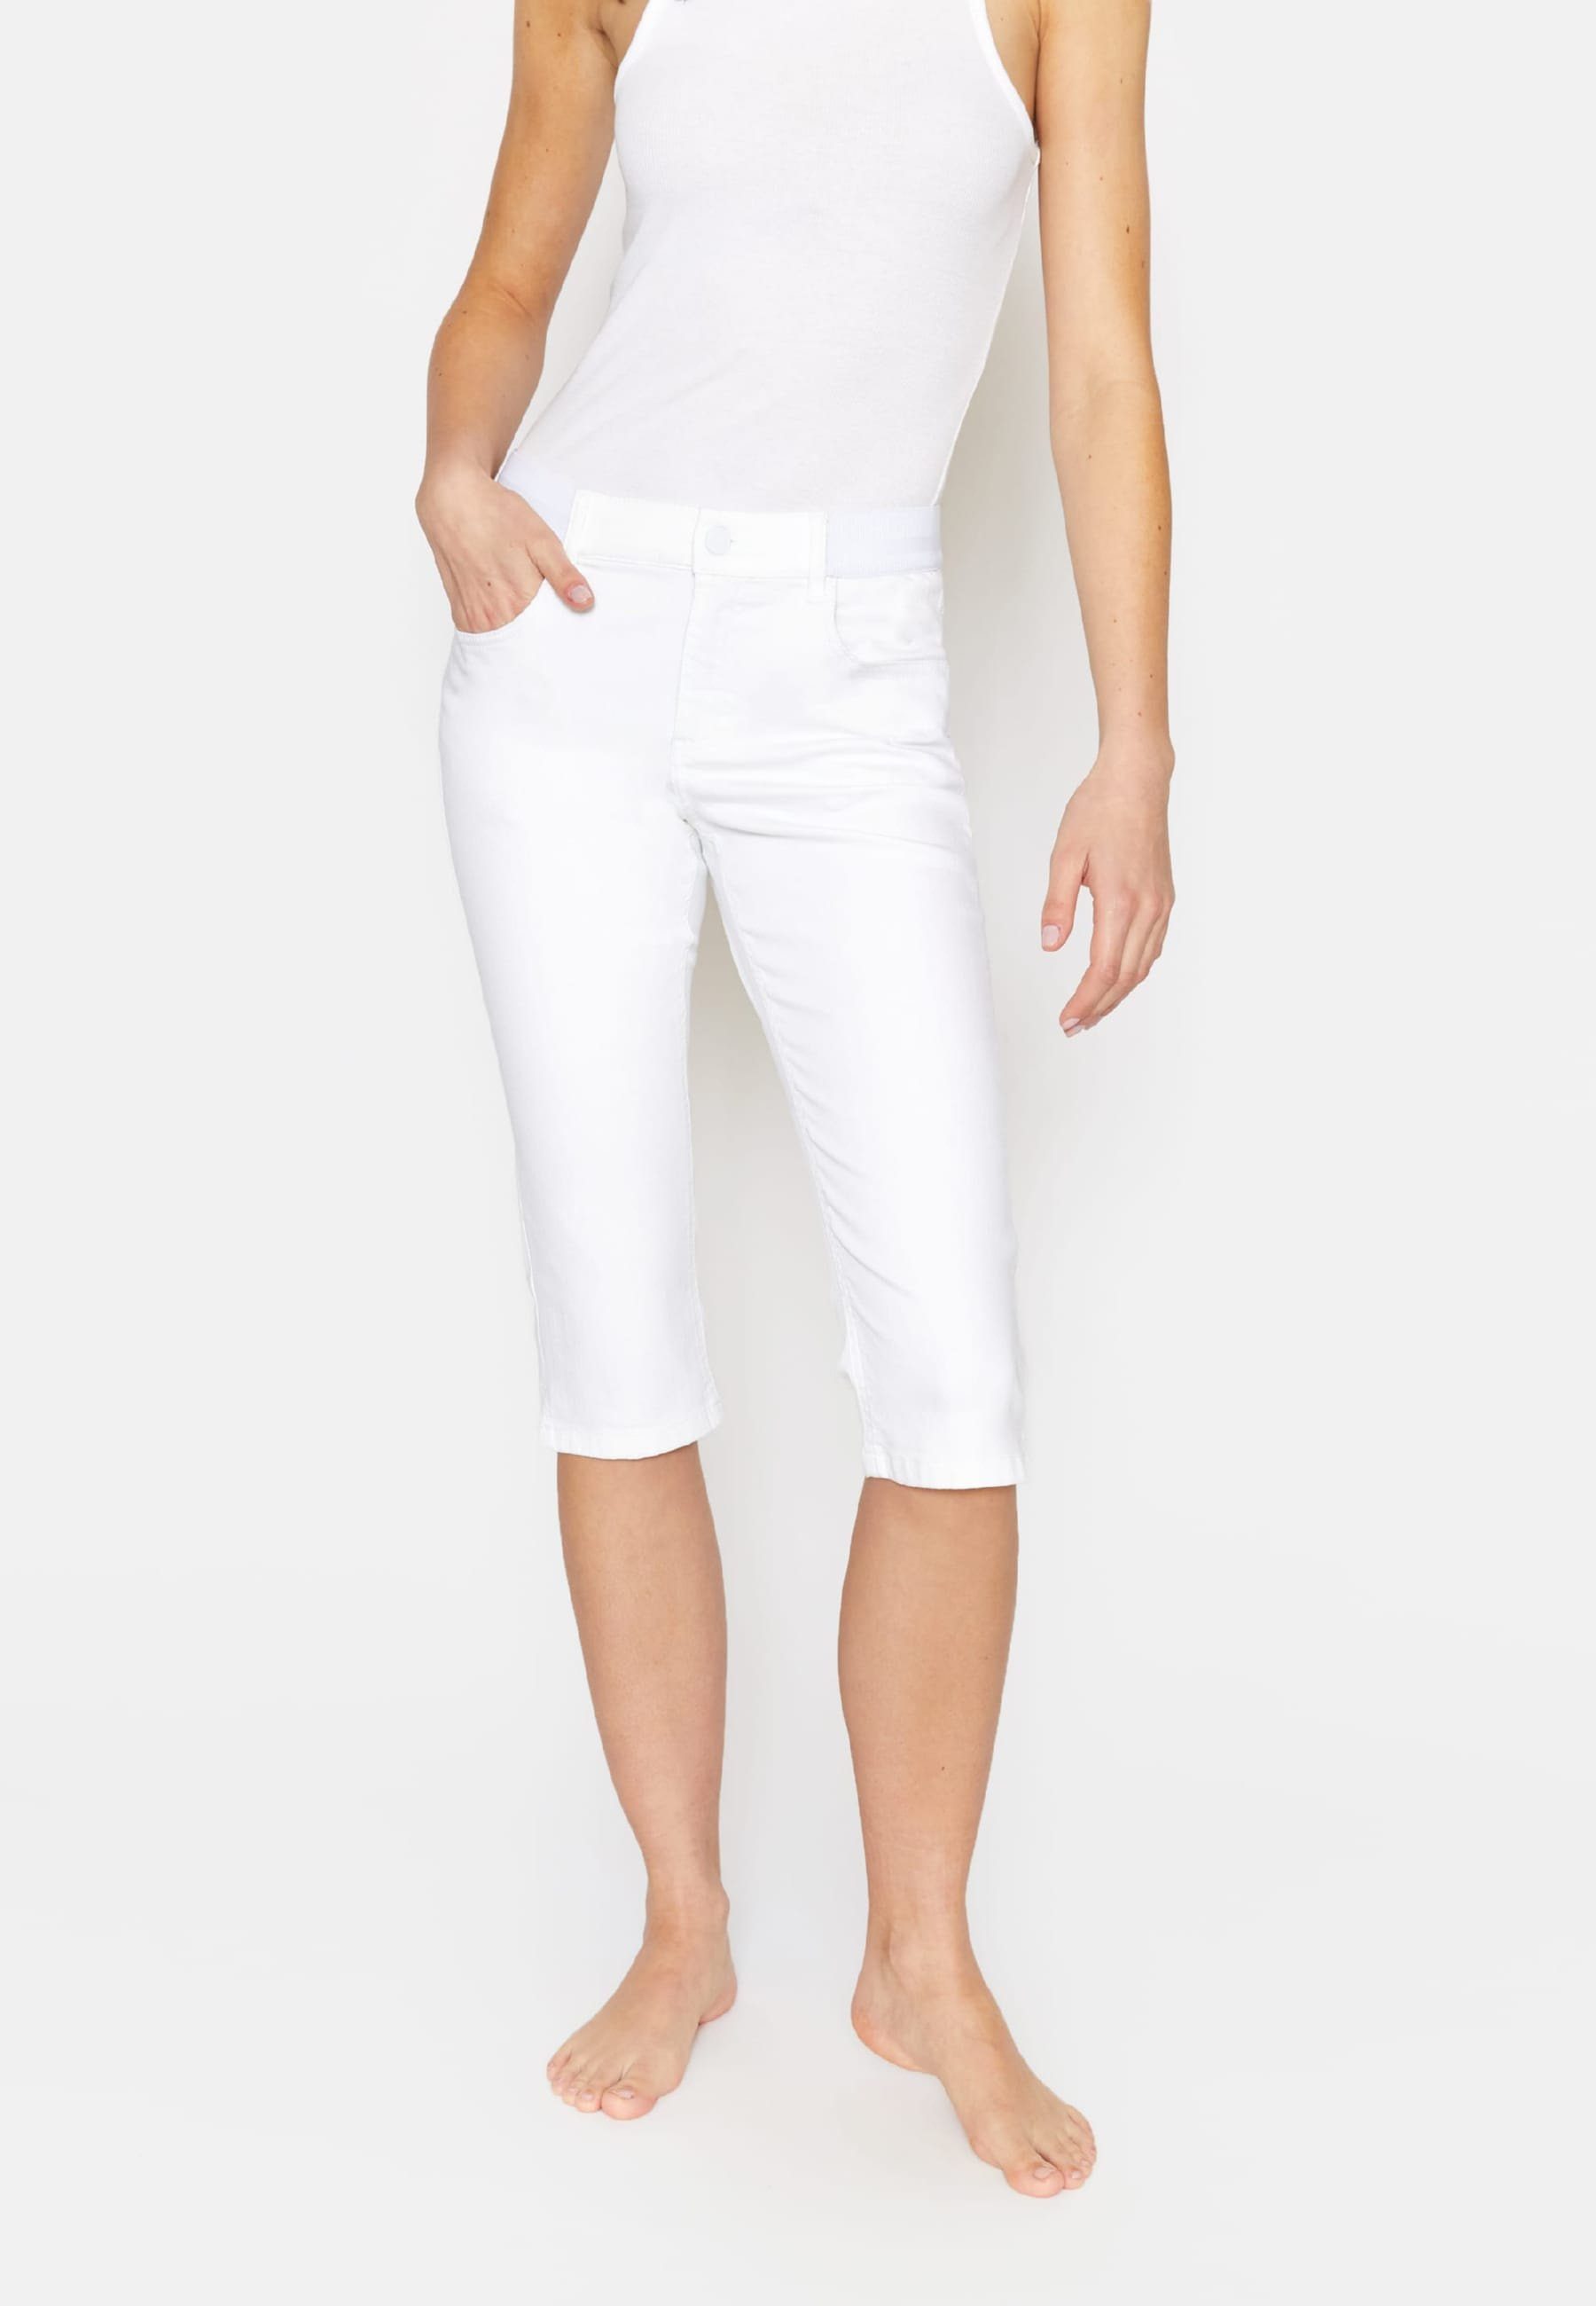 ANGELS Dehnbund-Jeans Kurze Jeans mit weiß Onesize Design Capri klassischem